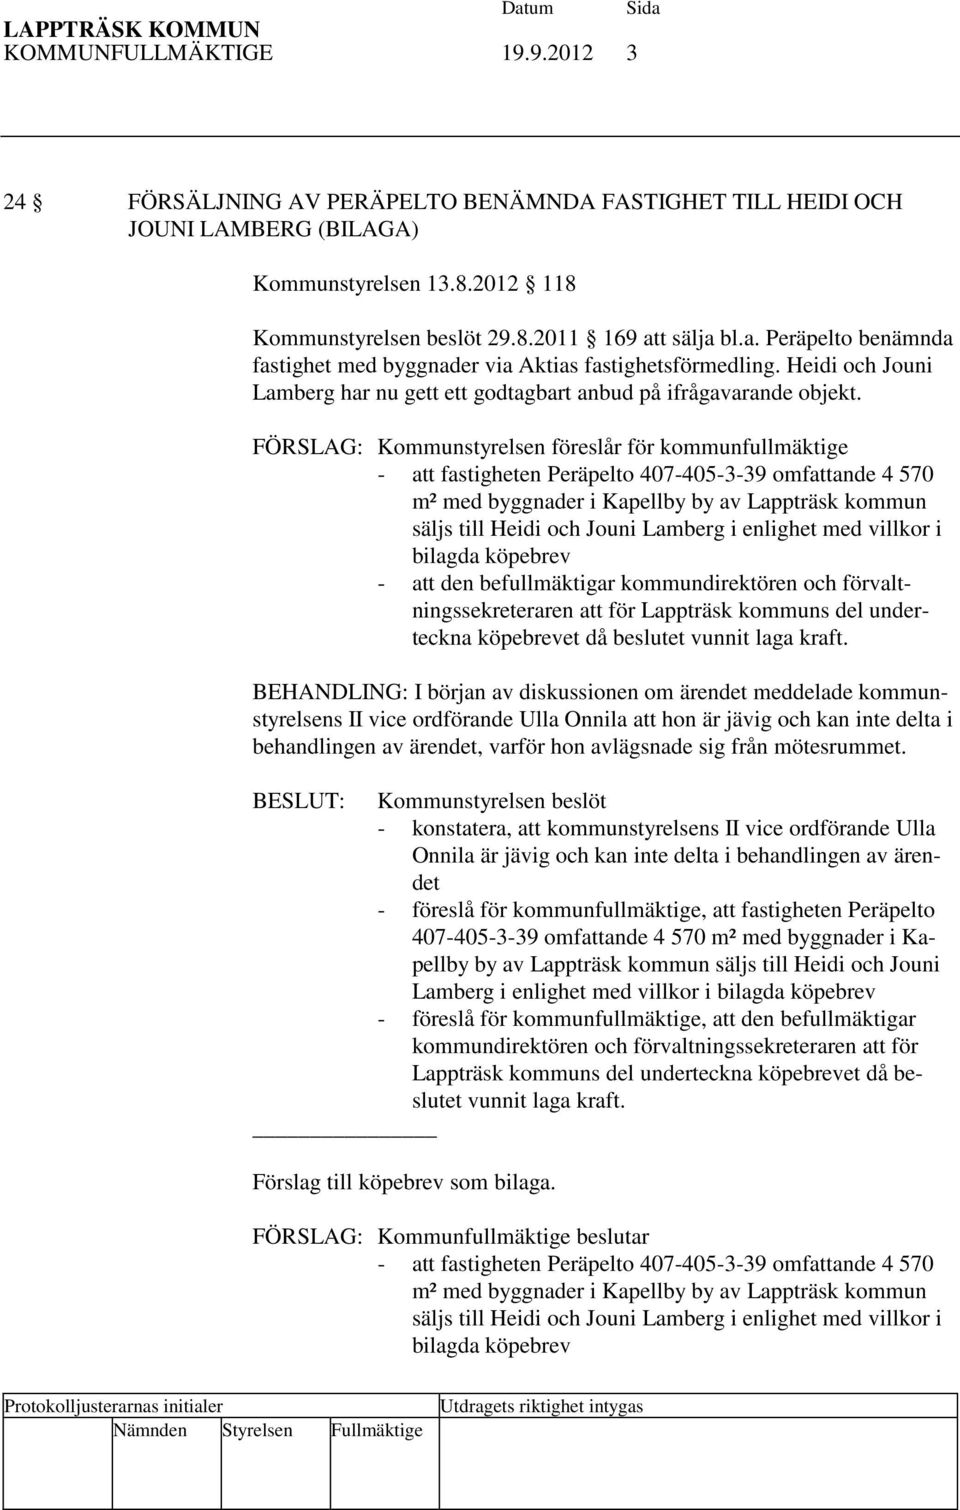 FÖRSLAG: Kommunstyrelsen föreslår för kommunfullmäktige - att fastigheten Peräpelto 407-405-3-39 omfattande 4 570 m² med byggnader i Kapellby by av Lappträsk kommun säljs till Heidi och Jouni Lamberg